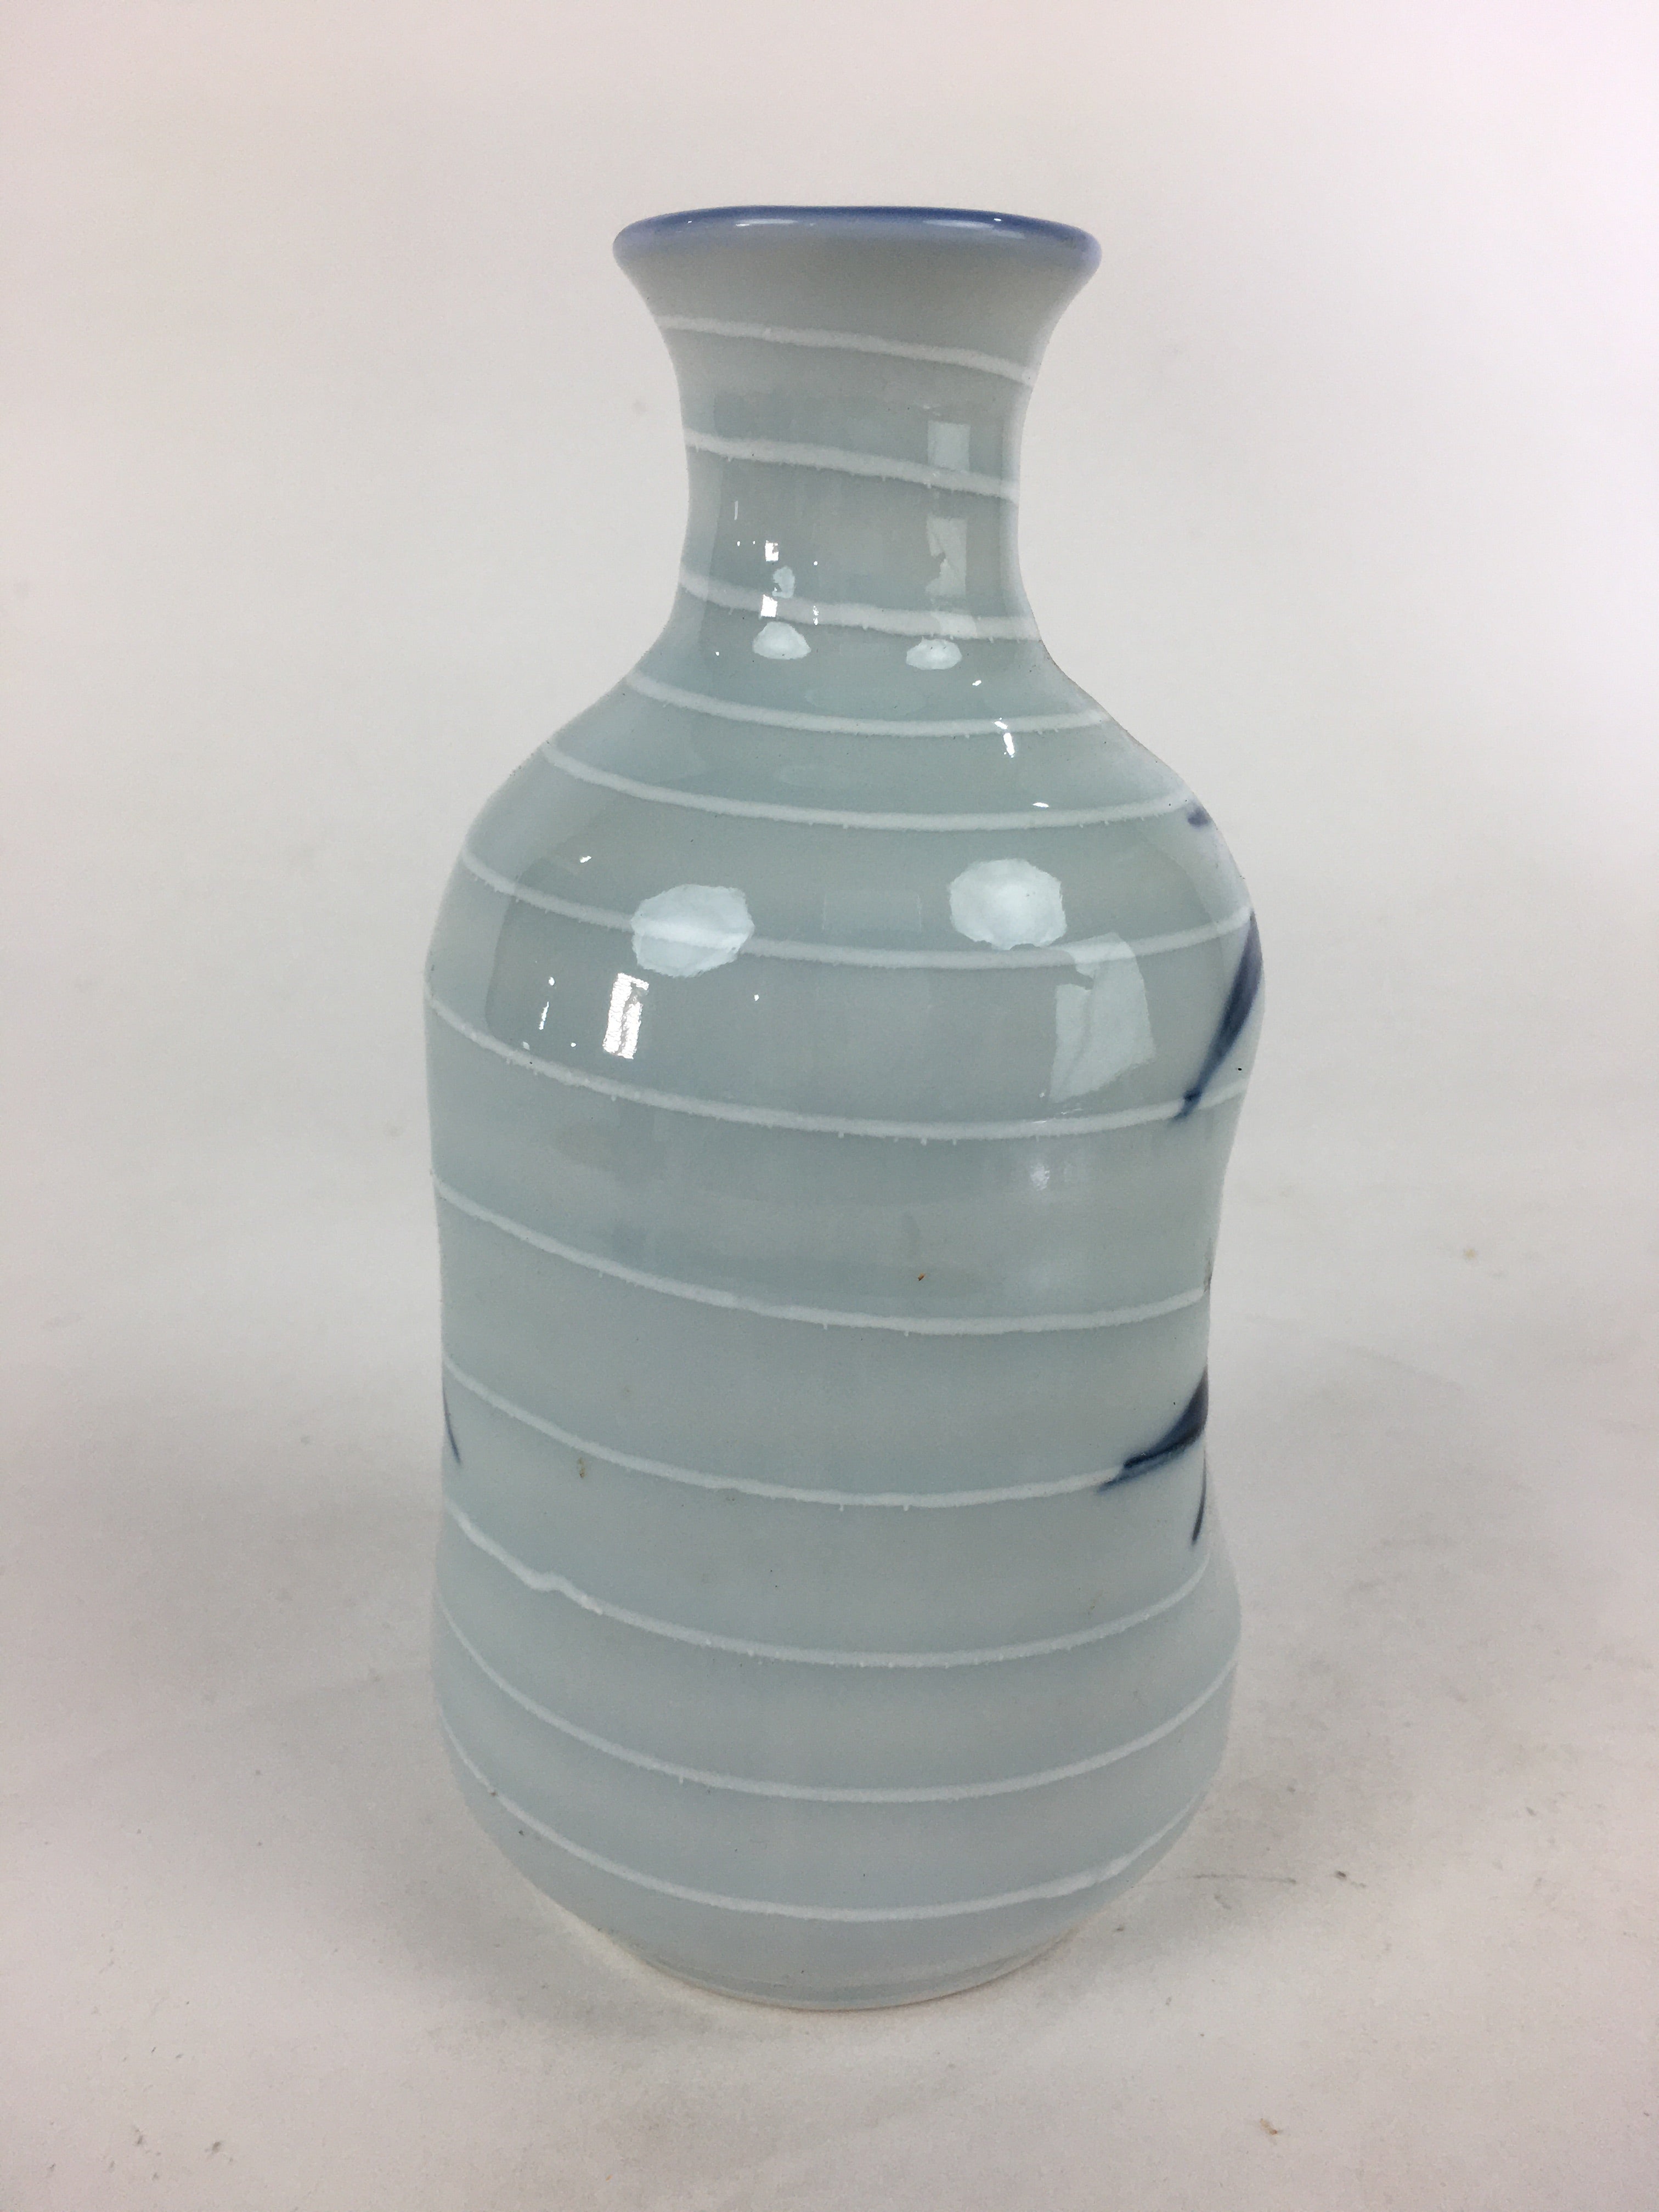 Japanese Porcelain Sake Bottle Vtg Blue Bamboo Dimple Design Tokkuri TS358